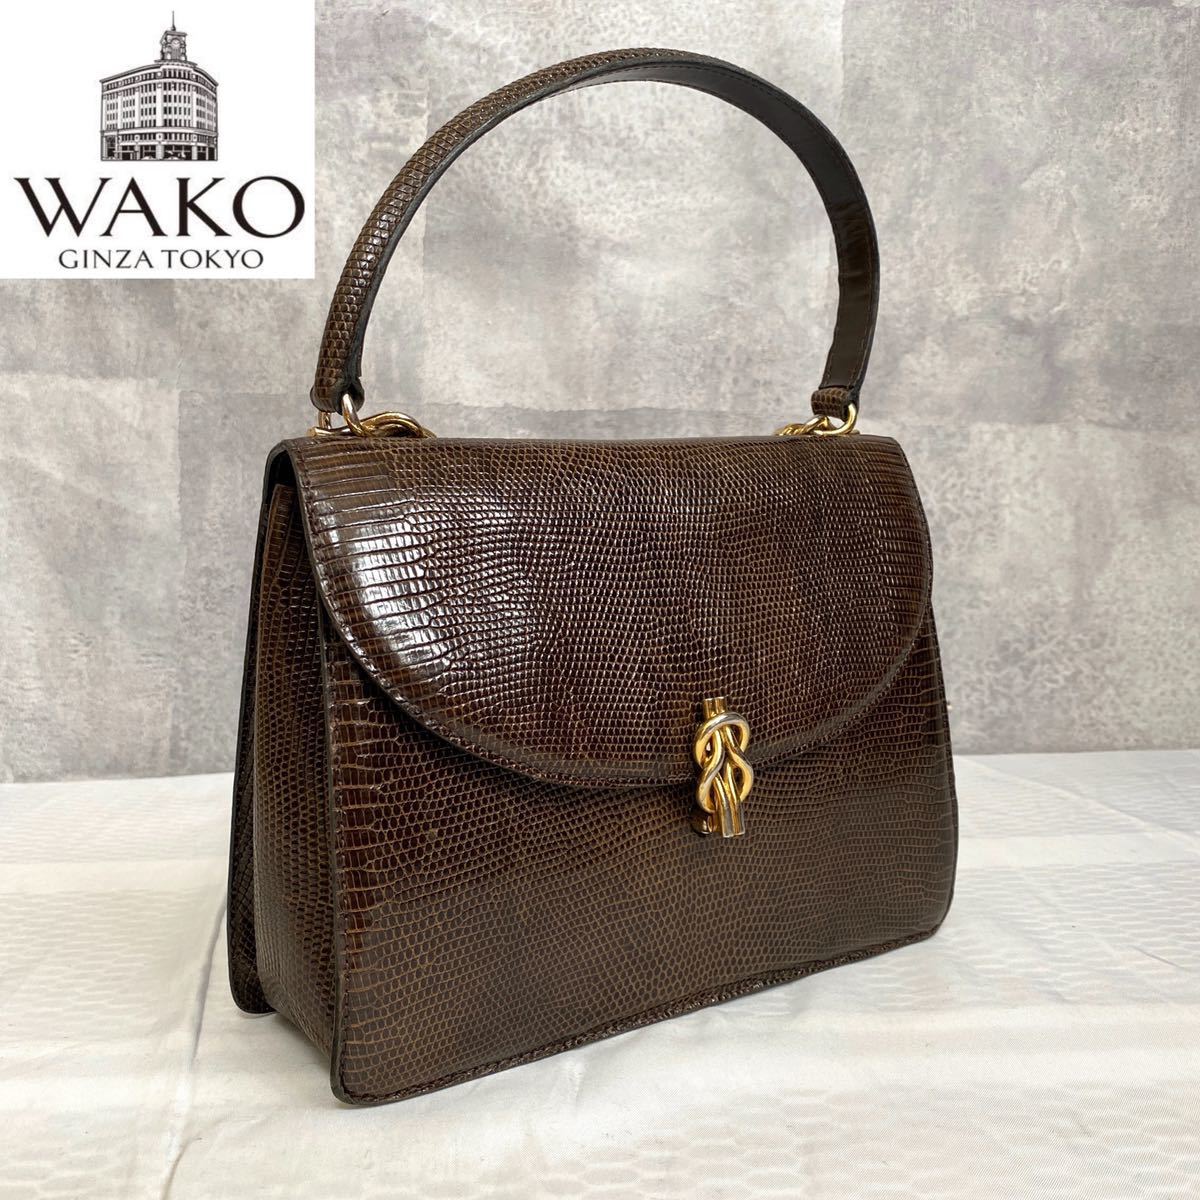 店内の商品は在庫 【WAKO】銀座和光 リザード革 ハンドバッグ ゴールド金具 フォーマル レザー ハンドバッグ